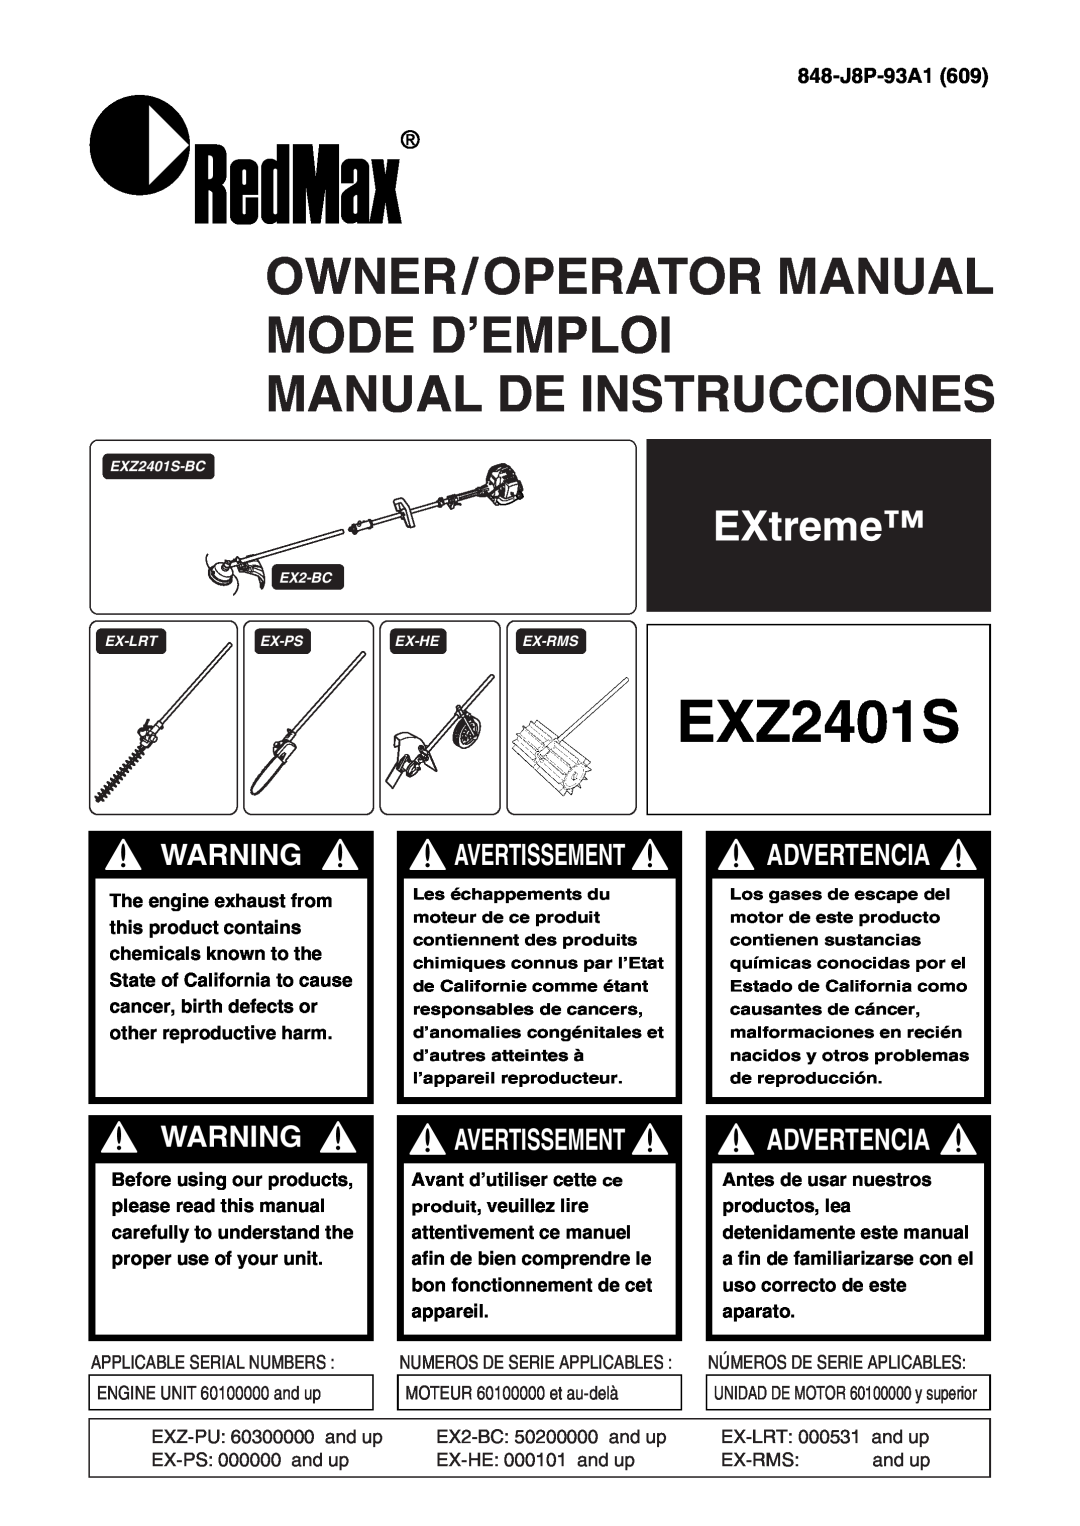 Zenoah EXZ2401S manual EXtreme, 848-J8P-93A1, Owner/Operator Manual Mode D’Emploi Manual De Instrucciones, Advertencia 